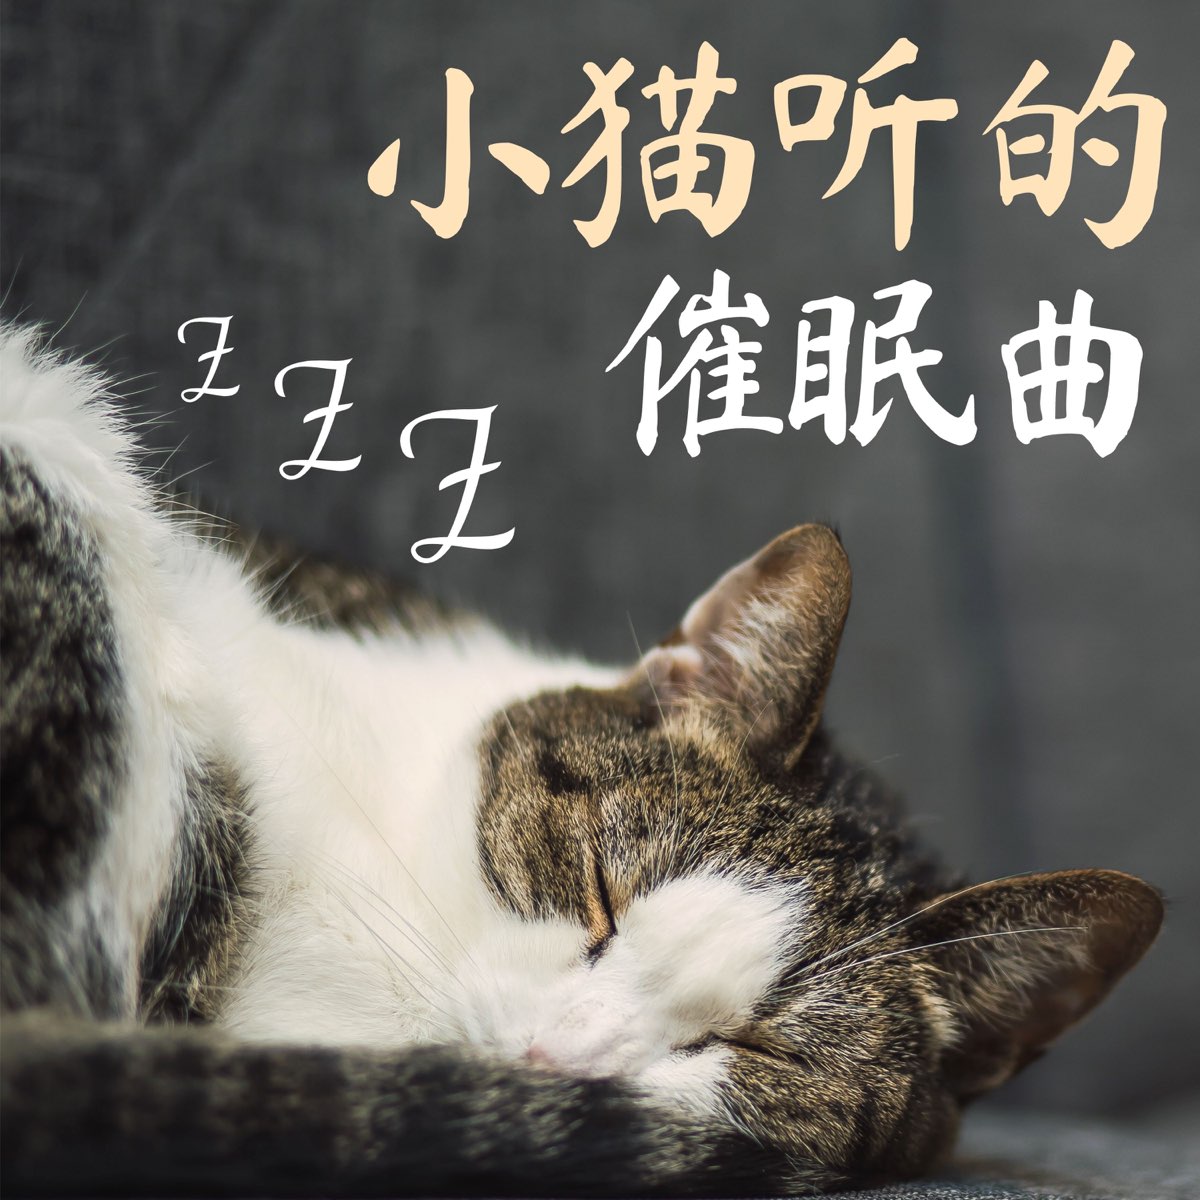 小猫听的催眠曲 睡猫音乐 音乐放松和入睡 放松你的猫di 猫咪安眠曲su Apple Music